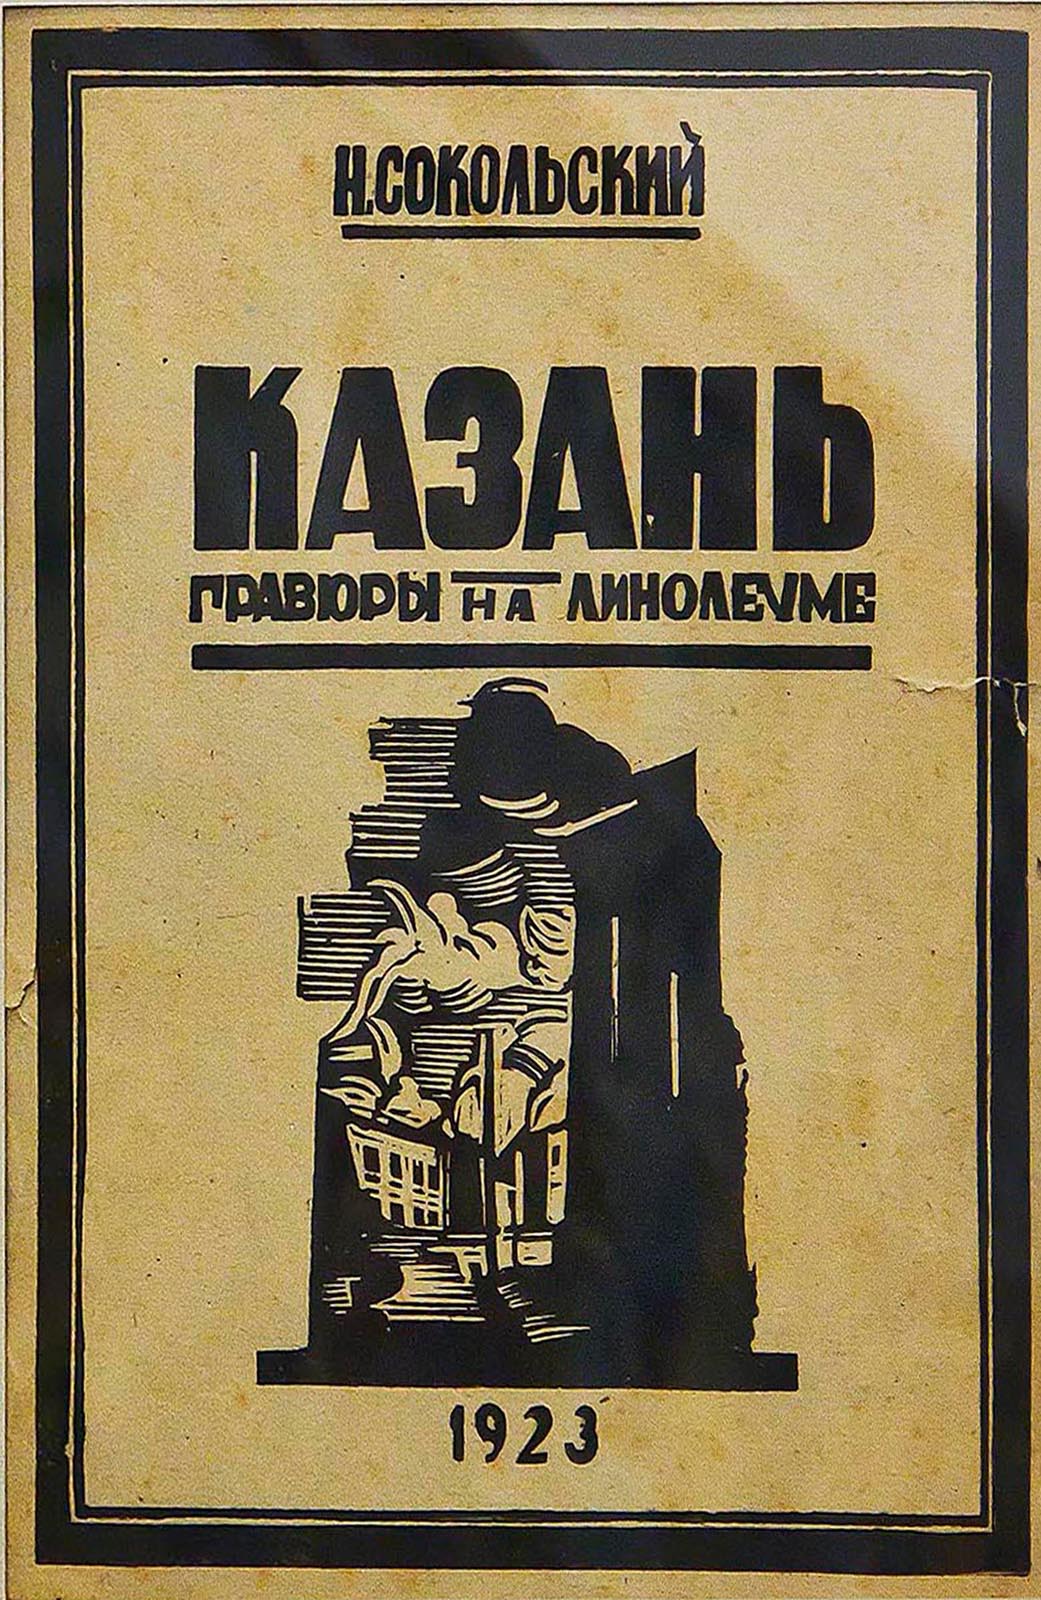 Фото №61423. Титульный лист альбома "Казань. Гравюры на линолеуме". 1923